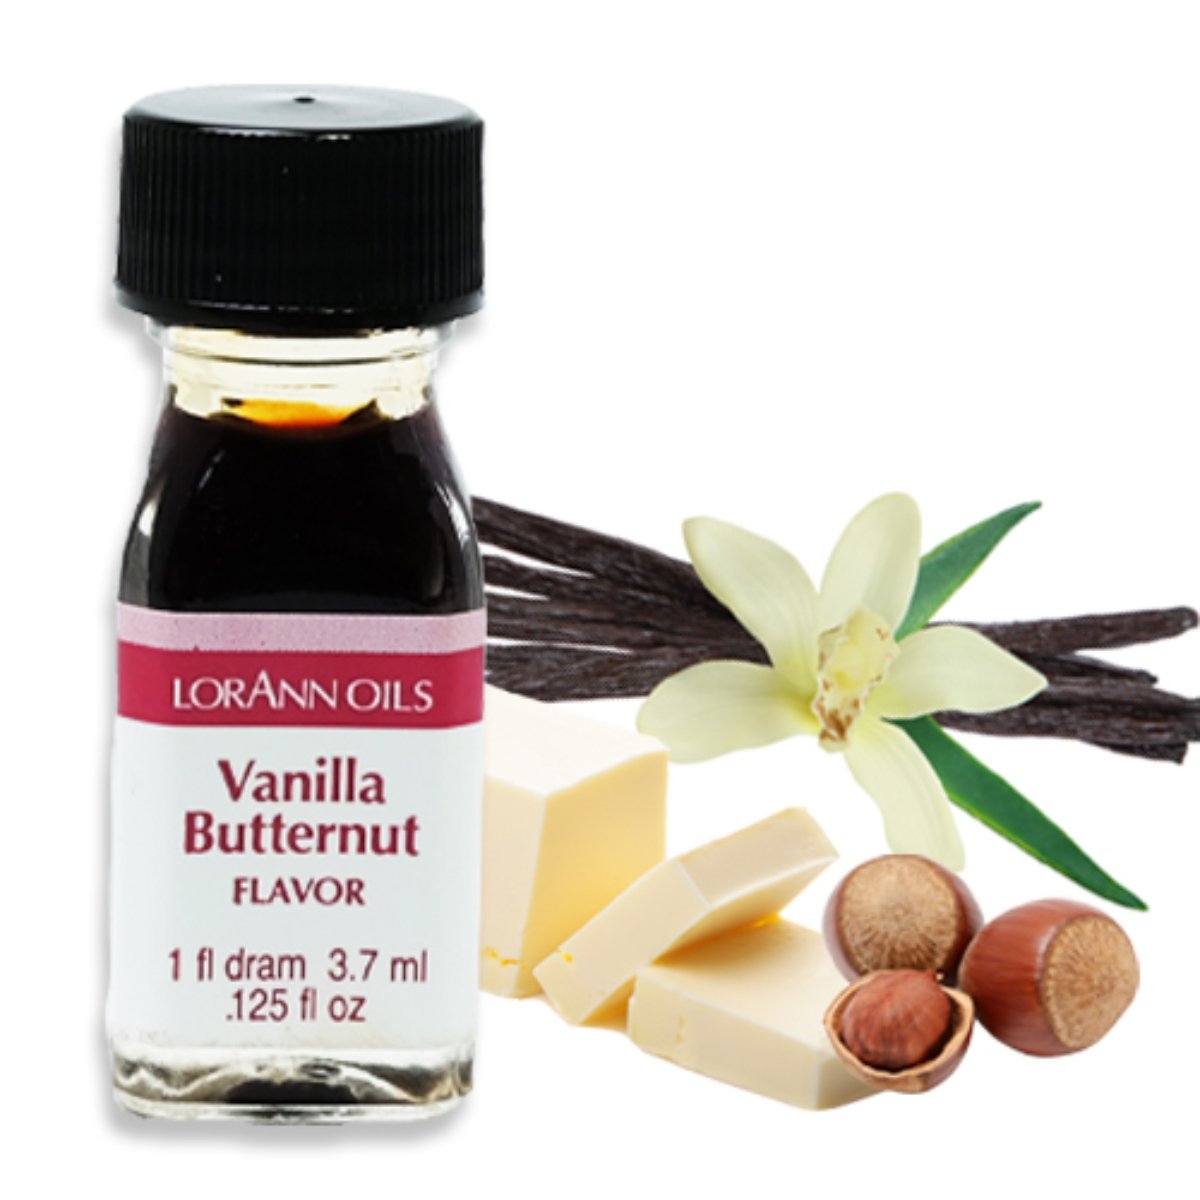 Vanilla Butternut Flavor 1 Dram - Bake Supply Plus